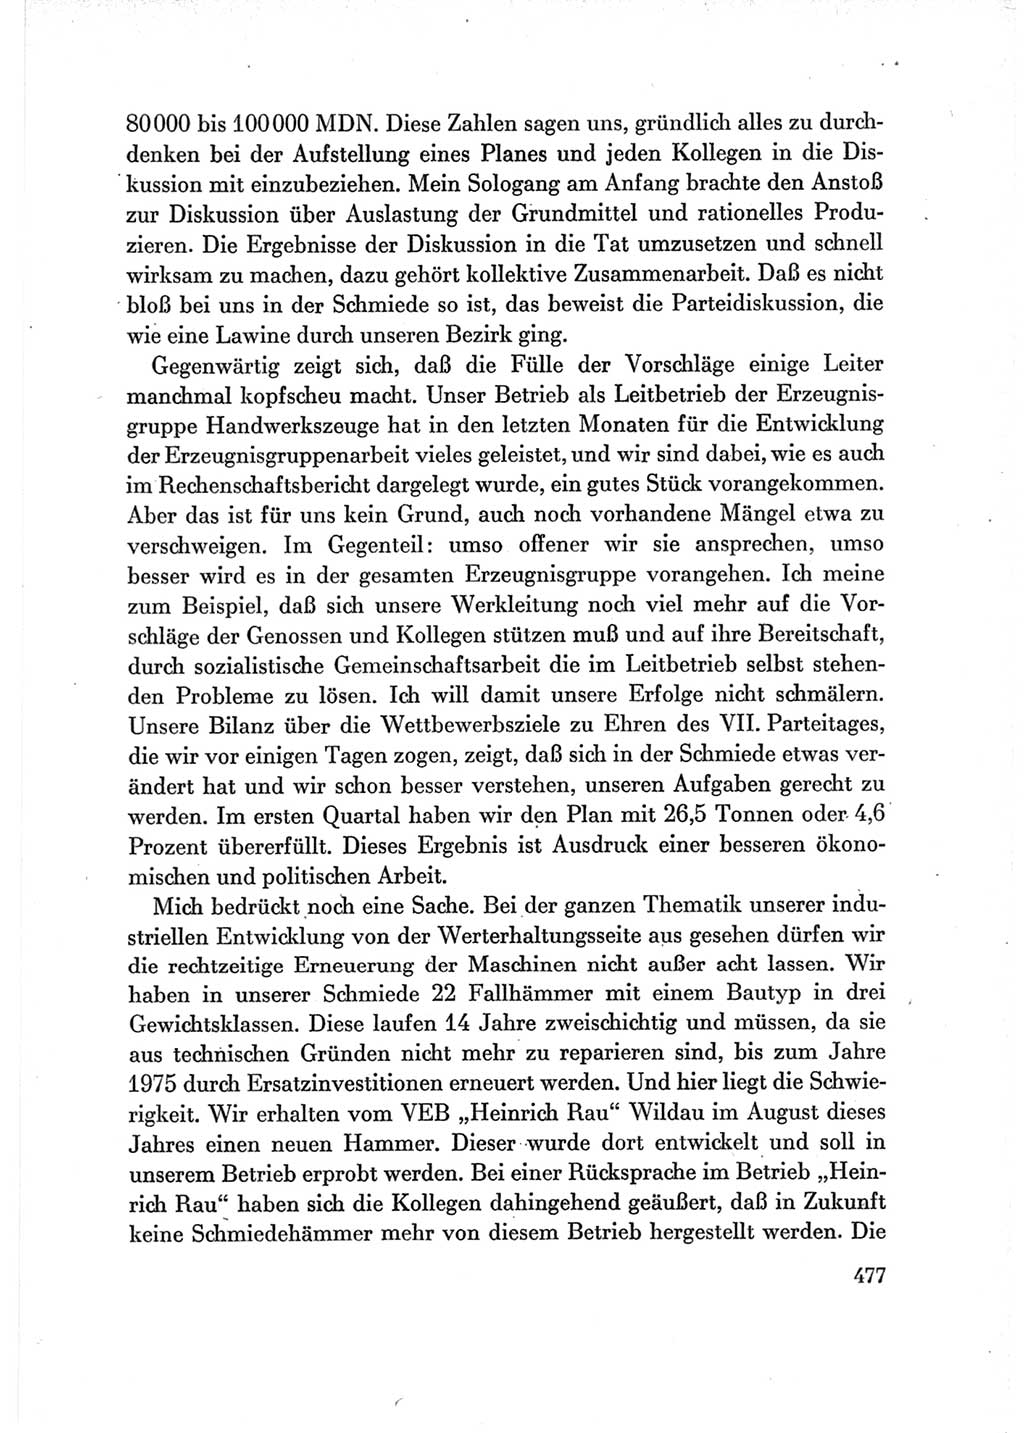 Protokoll der Verhandlungen des Ⅶ. Parteitages der Sozialistischen Einheitspartei Deutschlands (SED) [Deutsche Demokratische Republik (DDR)] 1967, Band Ⅲ, Seite 477 (Prot. Verh. Ⅶ. PT SED DDR 1967, Bd. Ⅲ, S. 477)